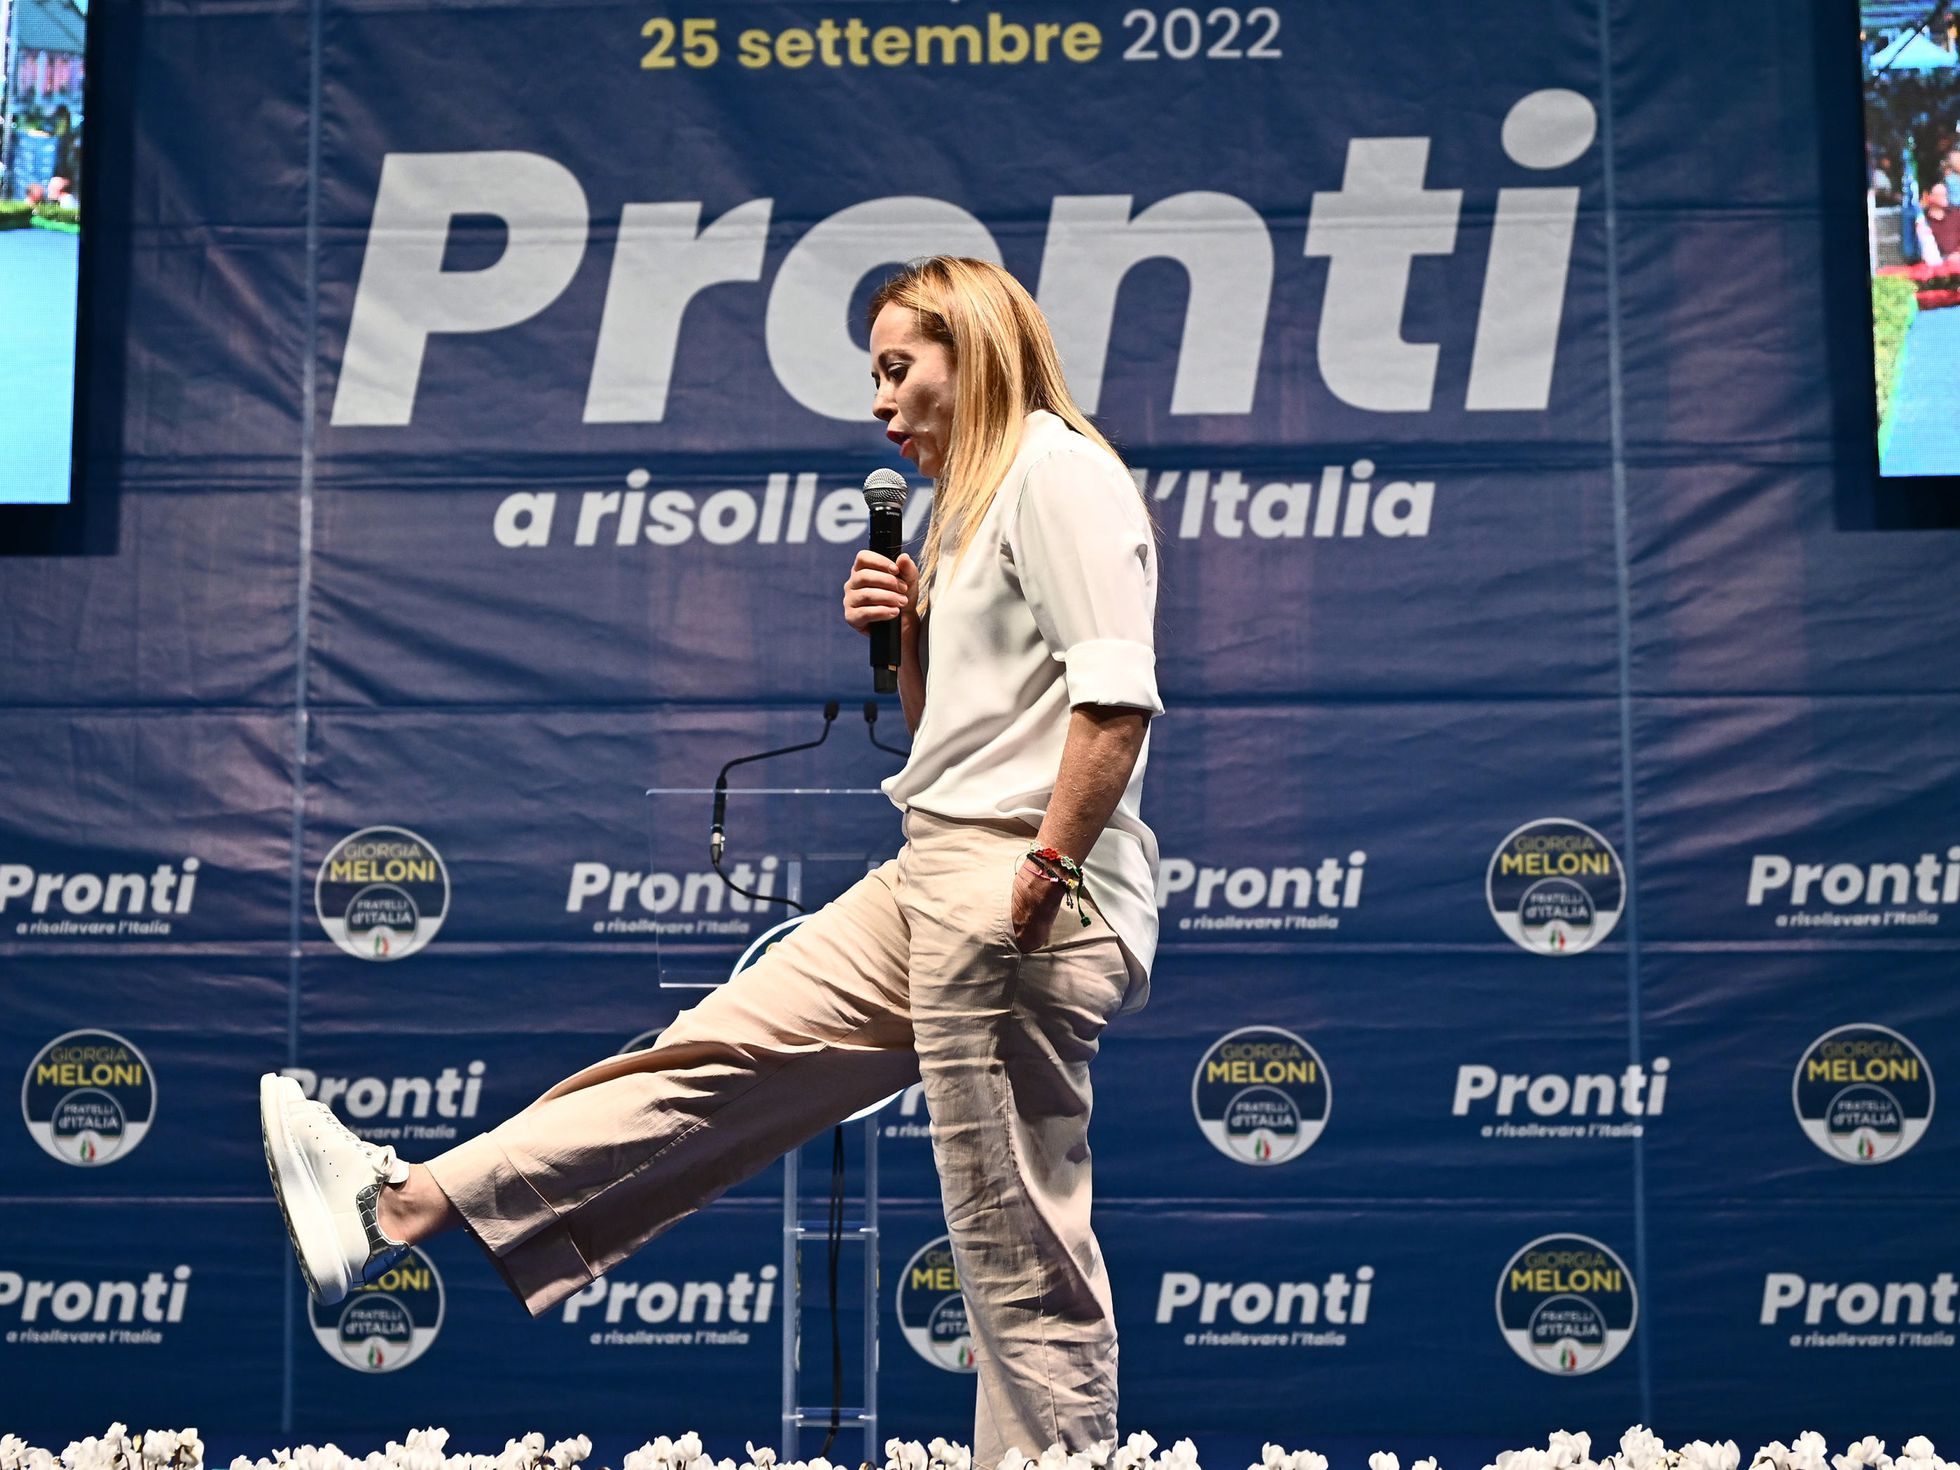 Ιταλία: Το κόμμα της Τζόρτζια Μελόνι έχει σχεδόν διπλάσιο ποσοστό από την κεντροαριστερά